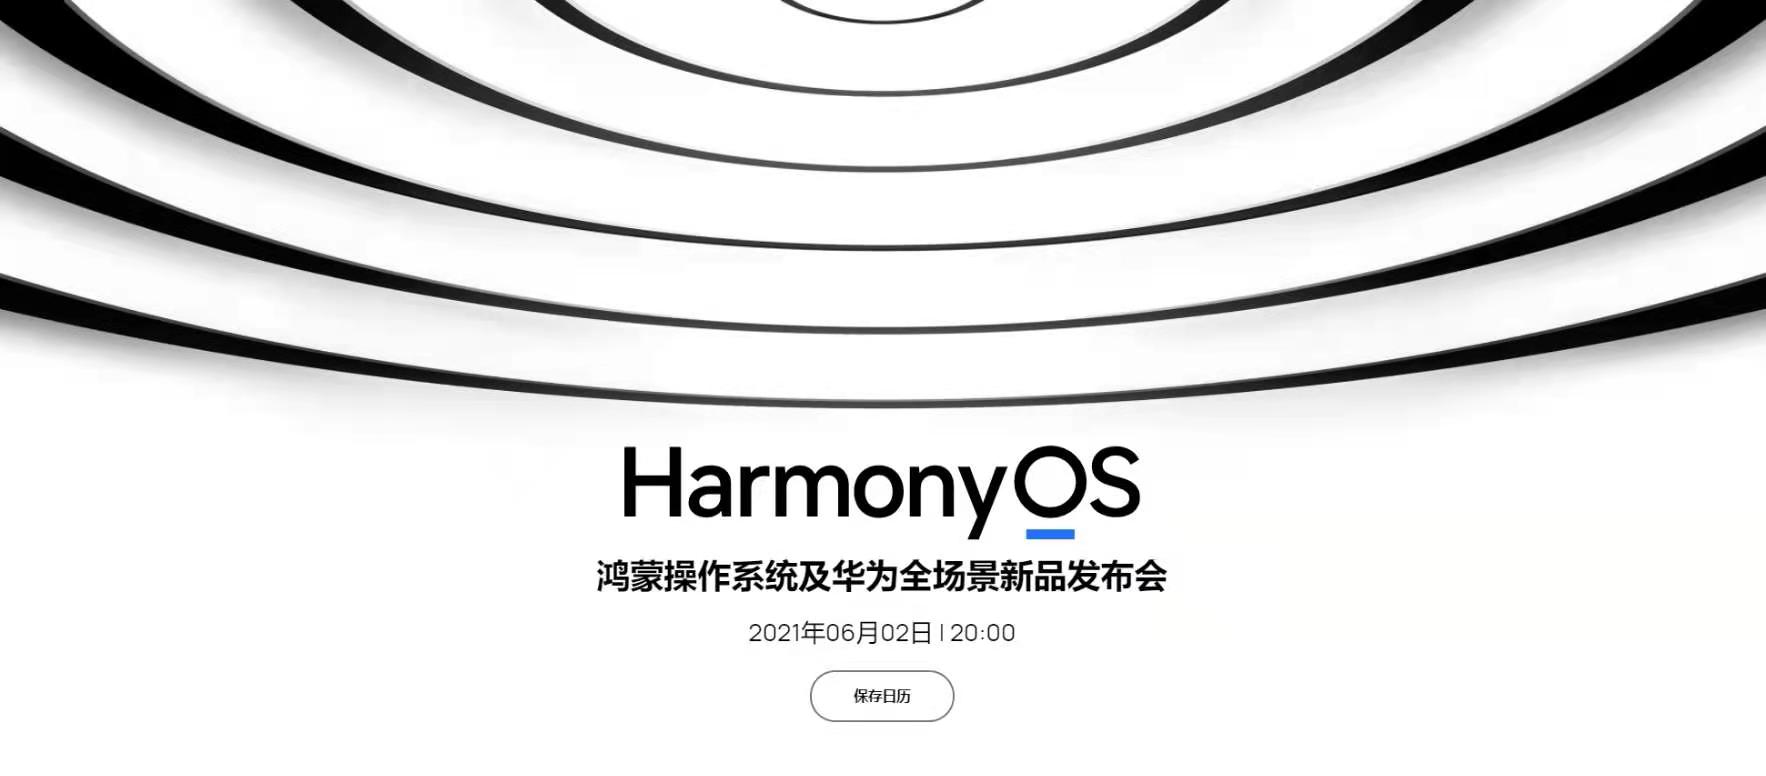 鸿蒙手机操作系统将发布 华为emui微博更名harmonyos